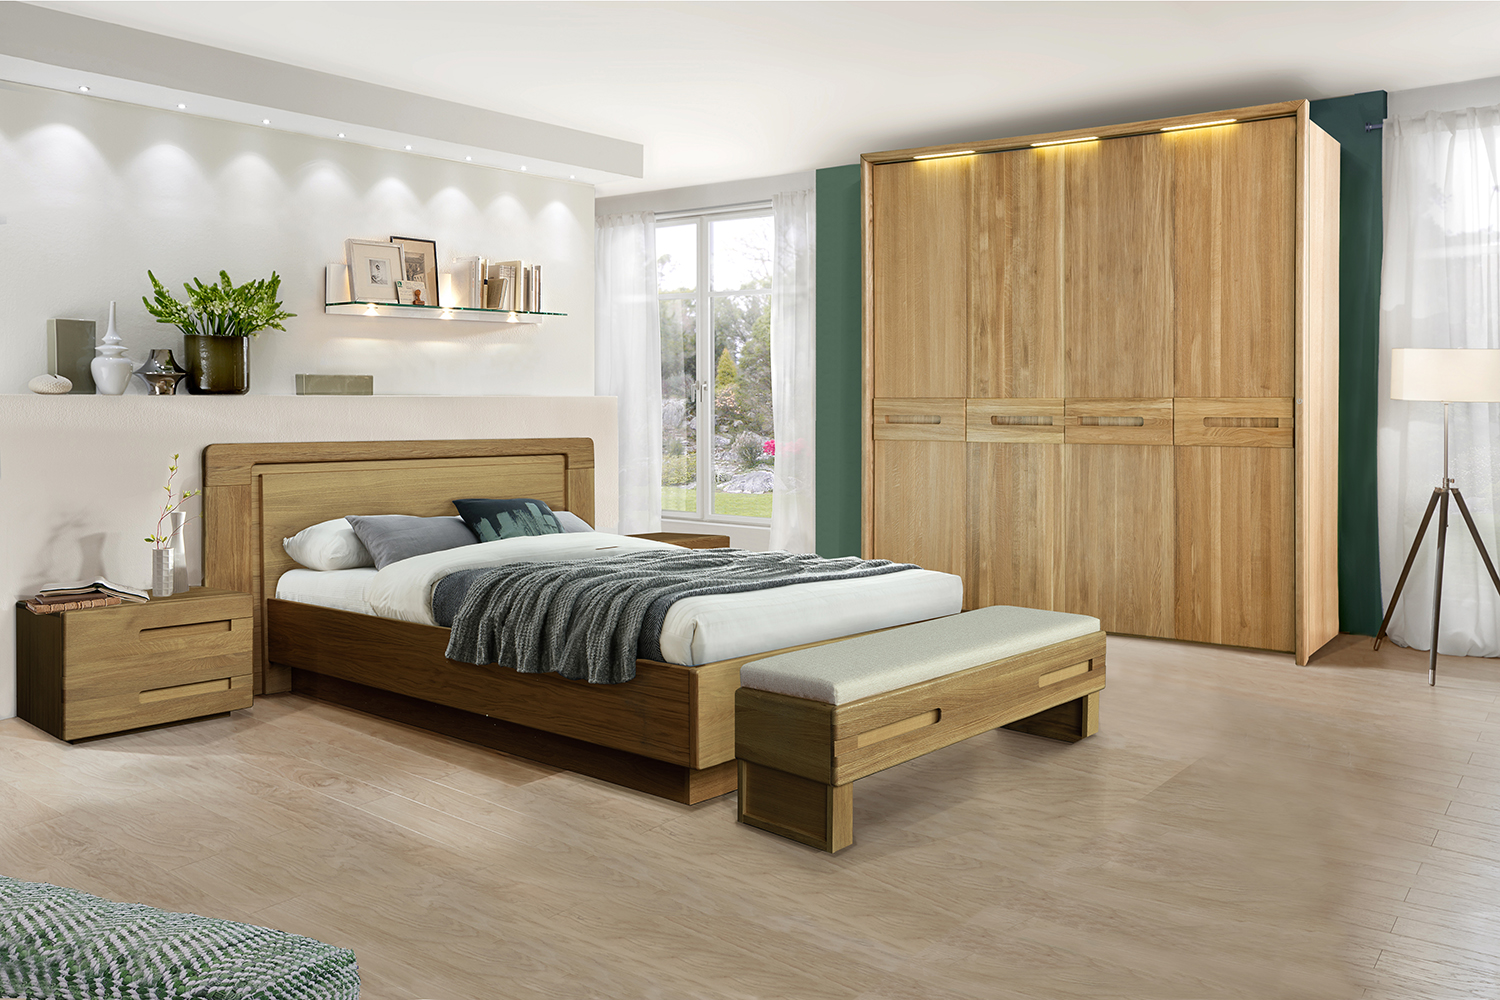 Как выбрать идеальный шкаф для спальни?